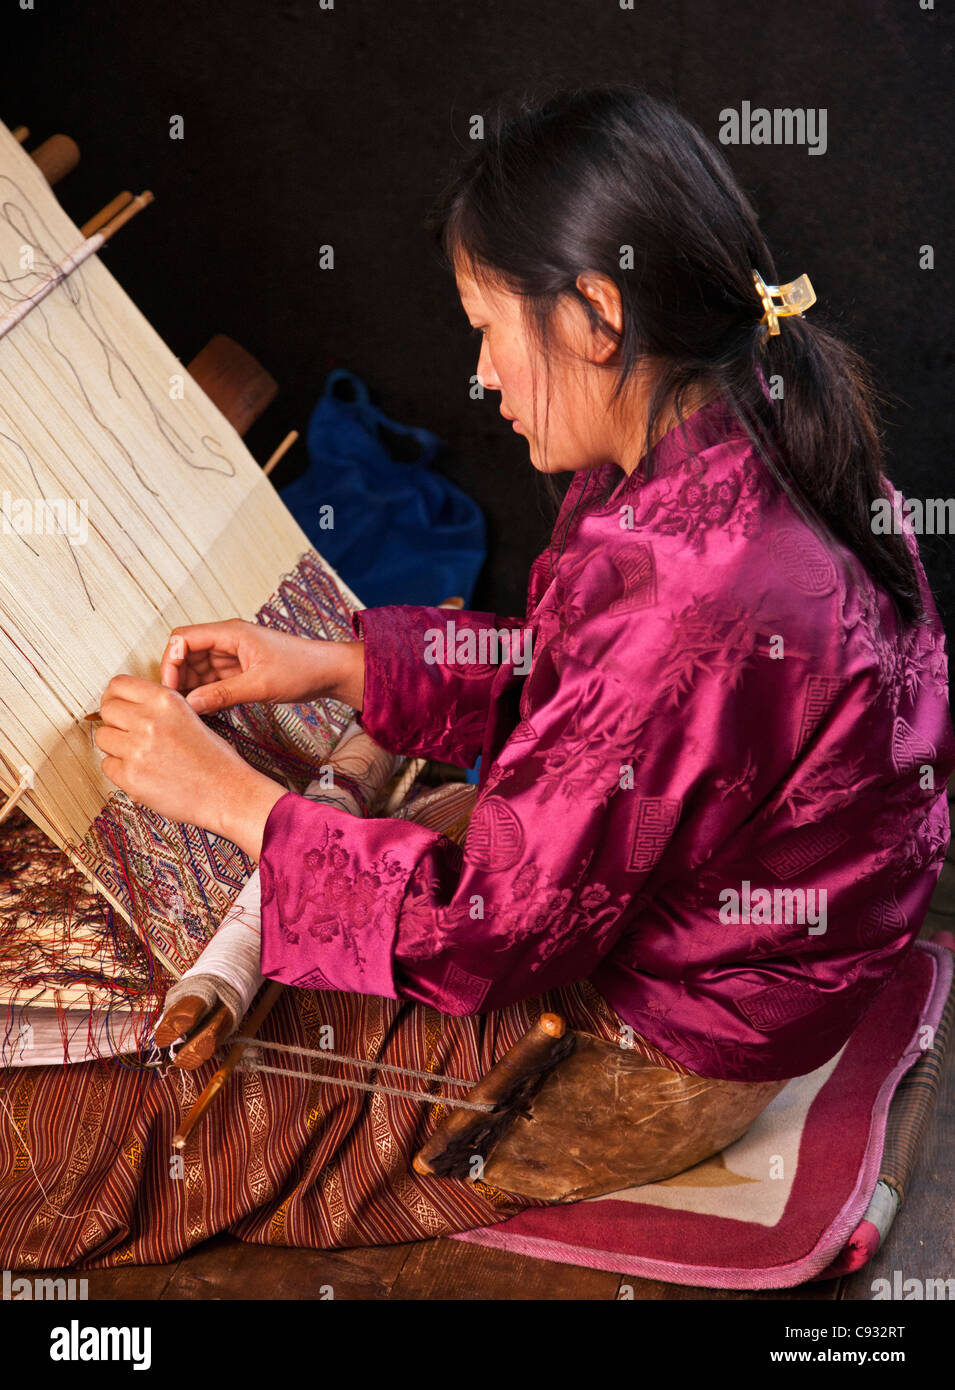 Eine Frau spinnt ein kompliziertes Muster in Seide auf ihre traditionellen hölzernen Webstuhl. Stockfoto